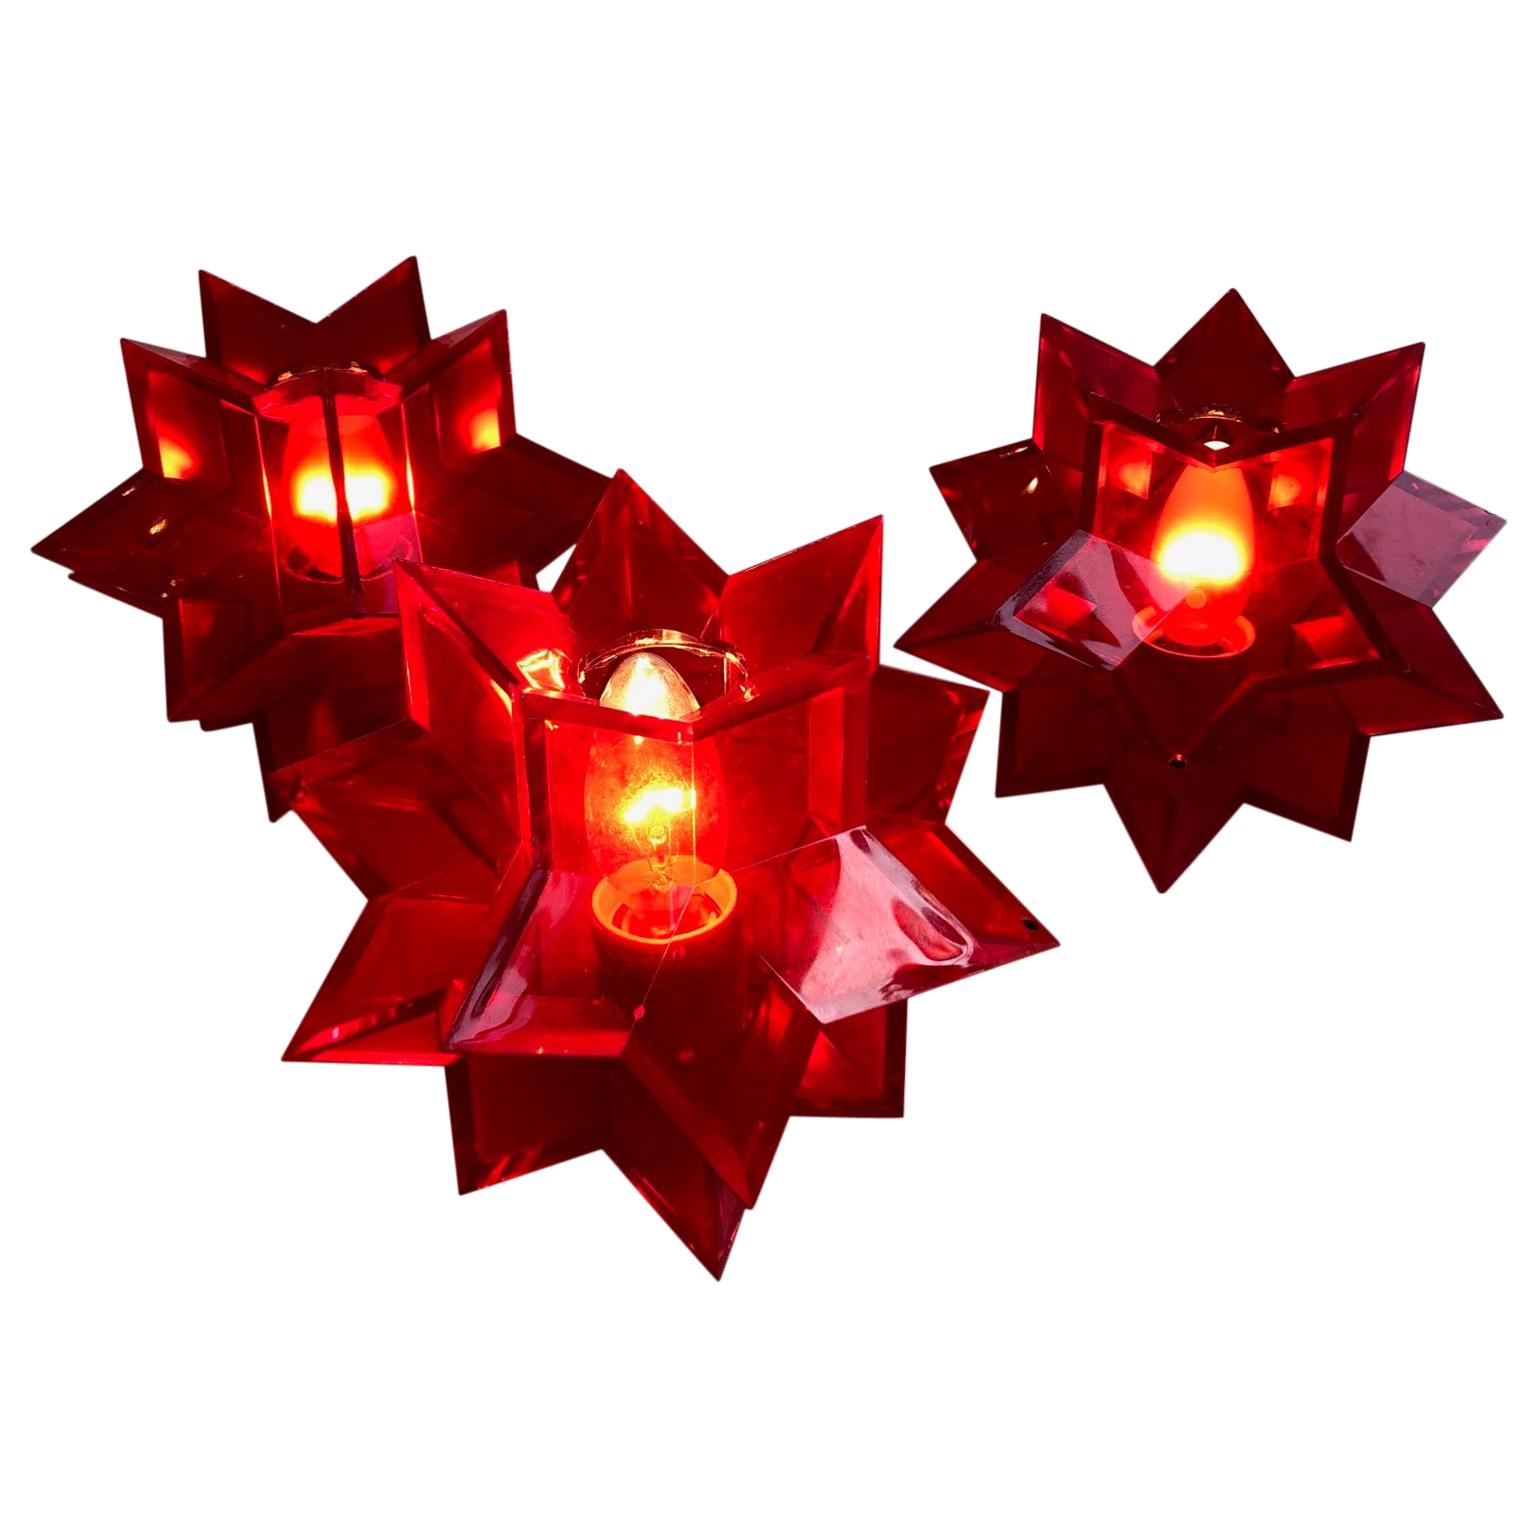 Lampes de sol ou de table italiennes du milieu du siècle en perspex acrylique rouge en forme d'étoile